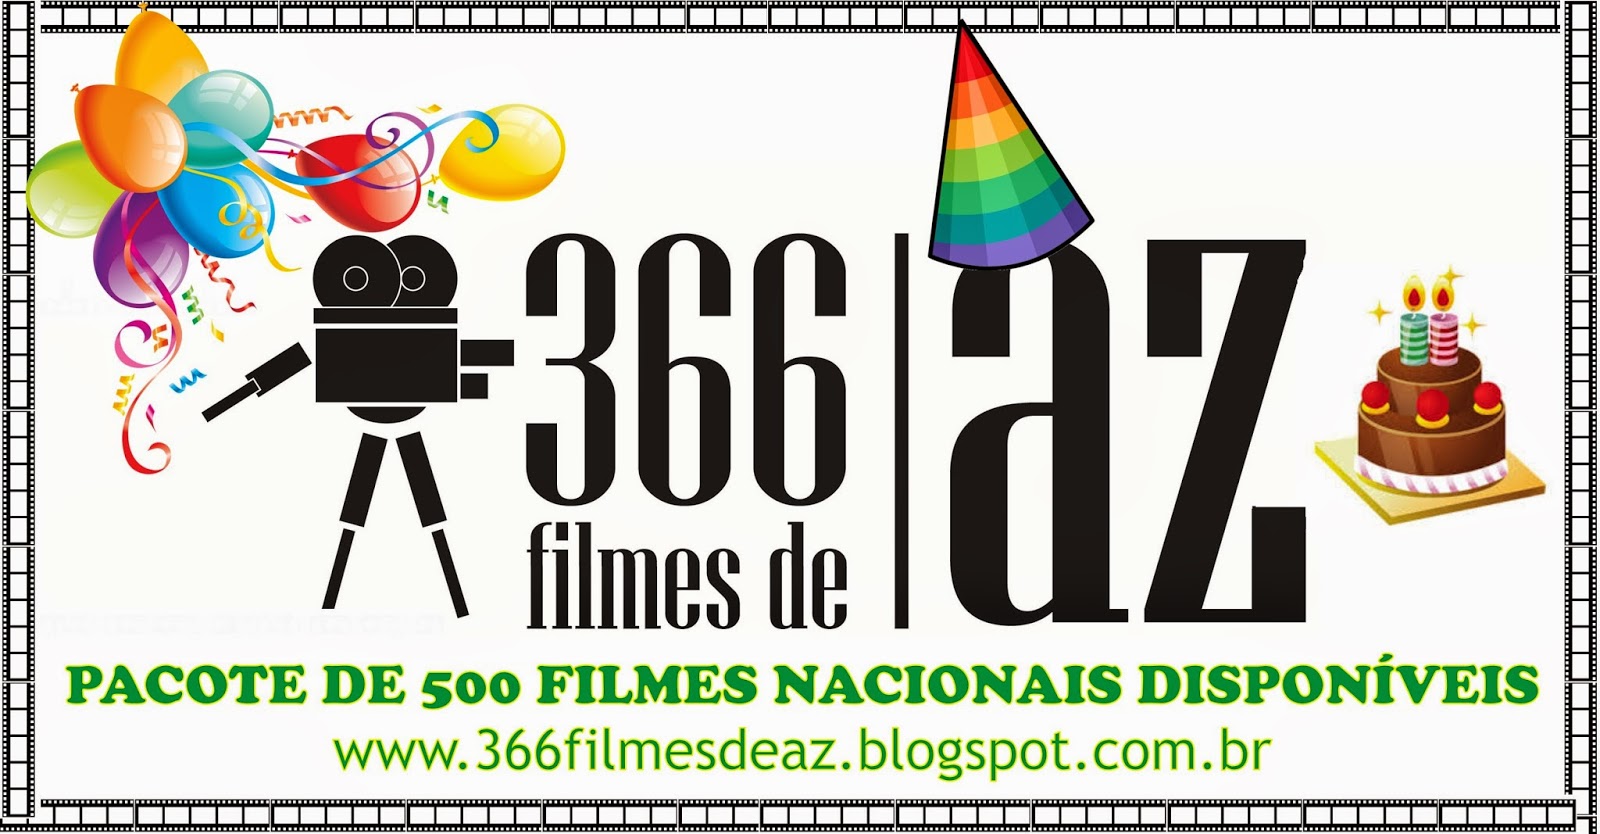 [ESPECIAL] Aniversário do blog: pacote com 500 filmes nacionais